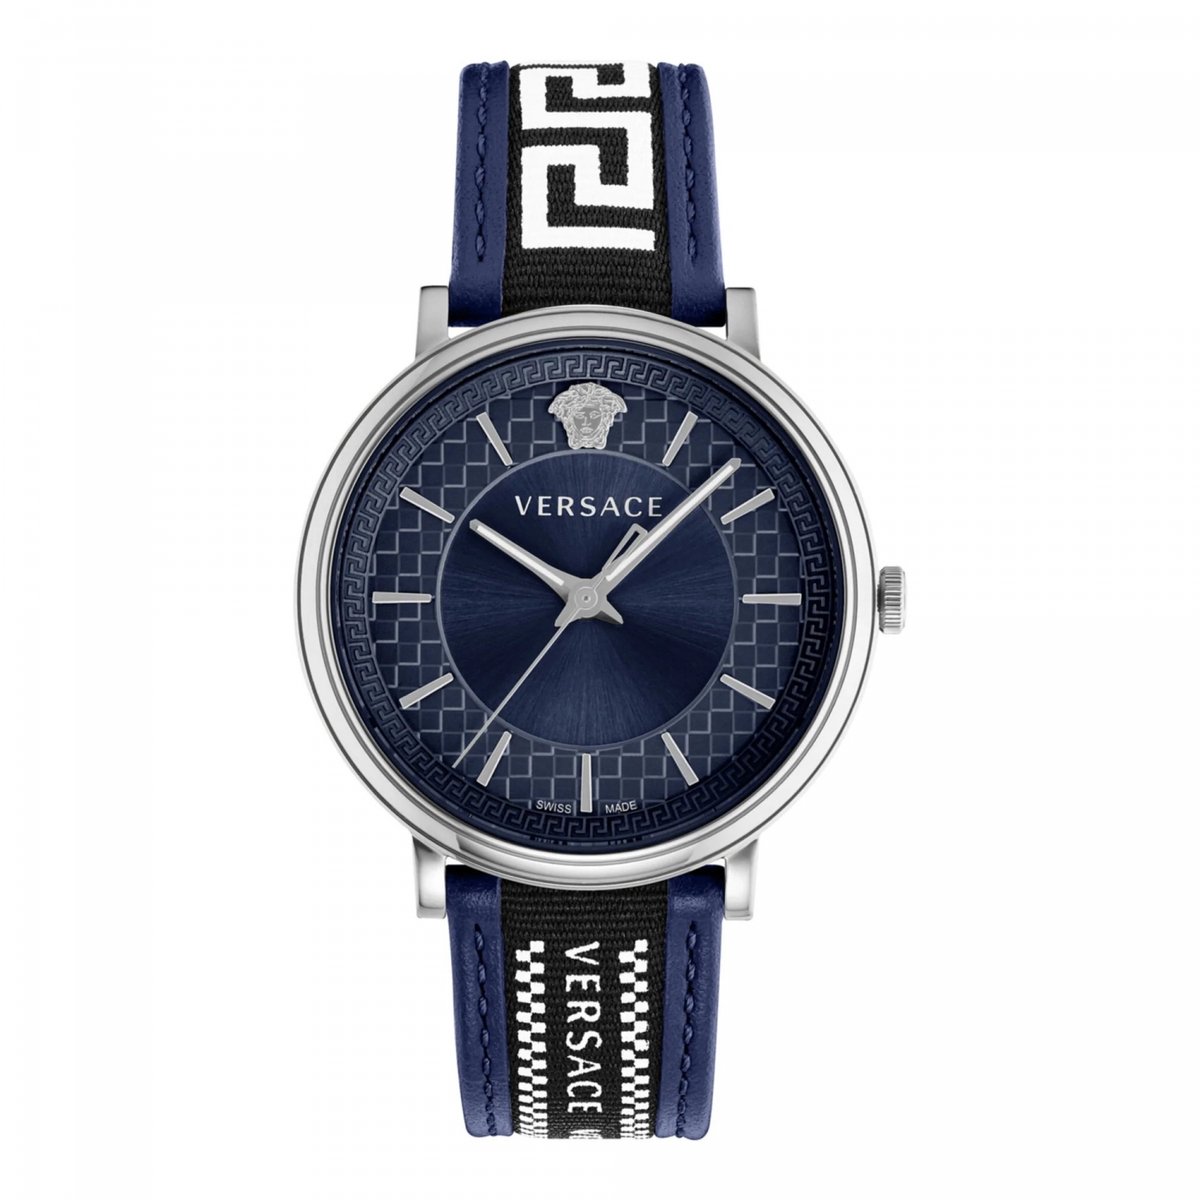 Versace VE5A01121 horloge mannen - Roestvrij Staal - zilver